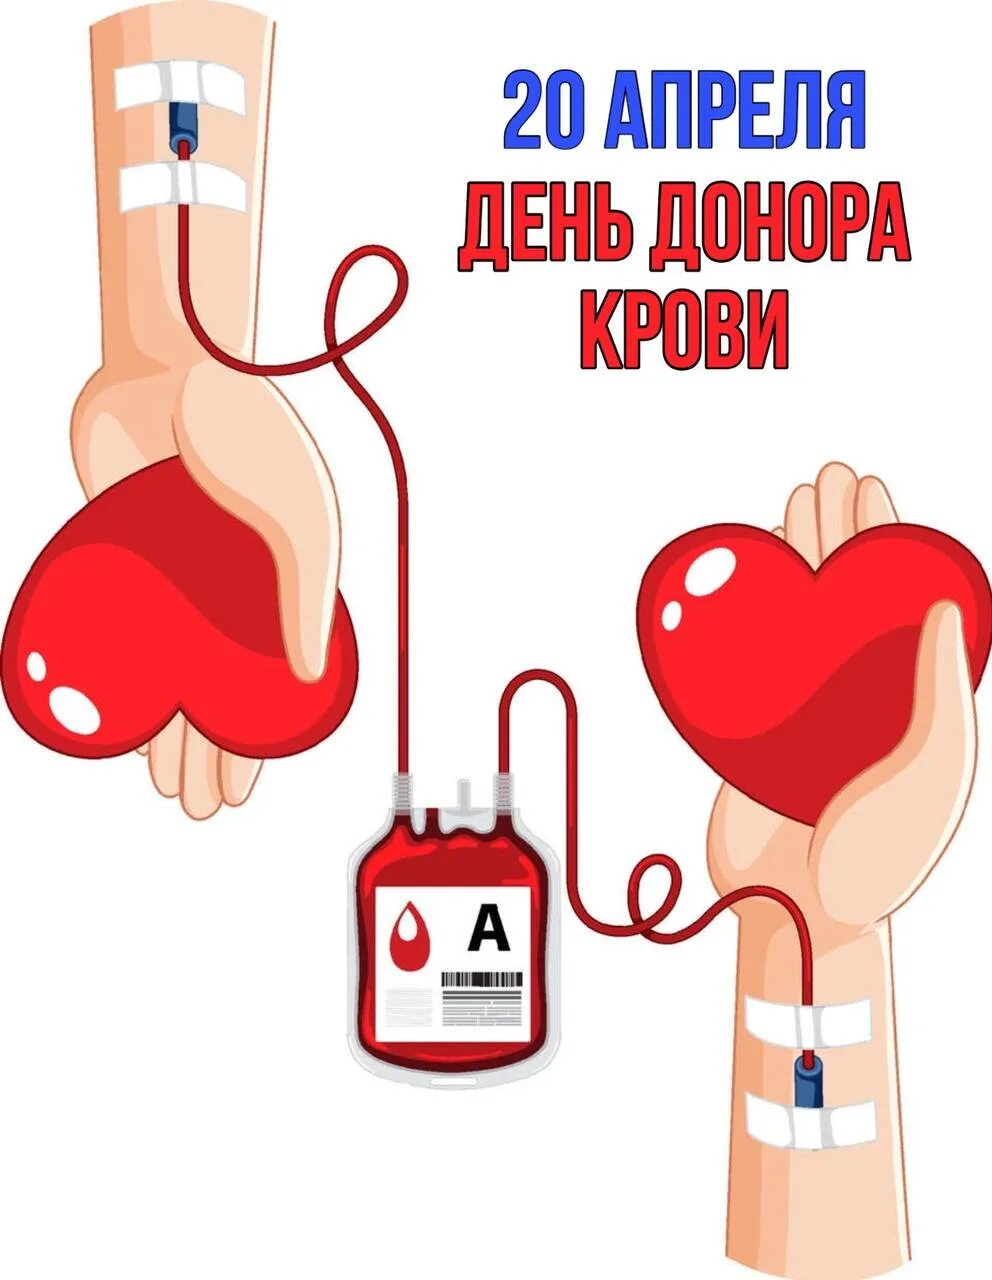 Праздник день донора. День донора. 20 Апреля день донора. День донора плакат. Донорство крови плакат.